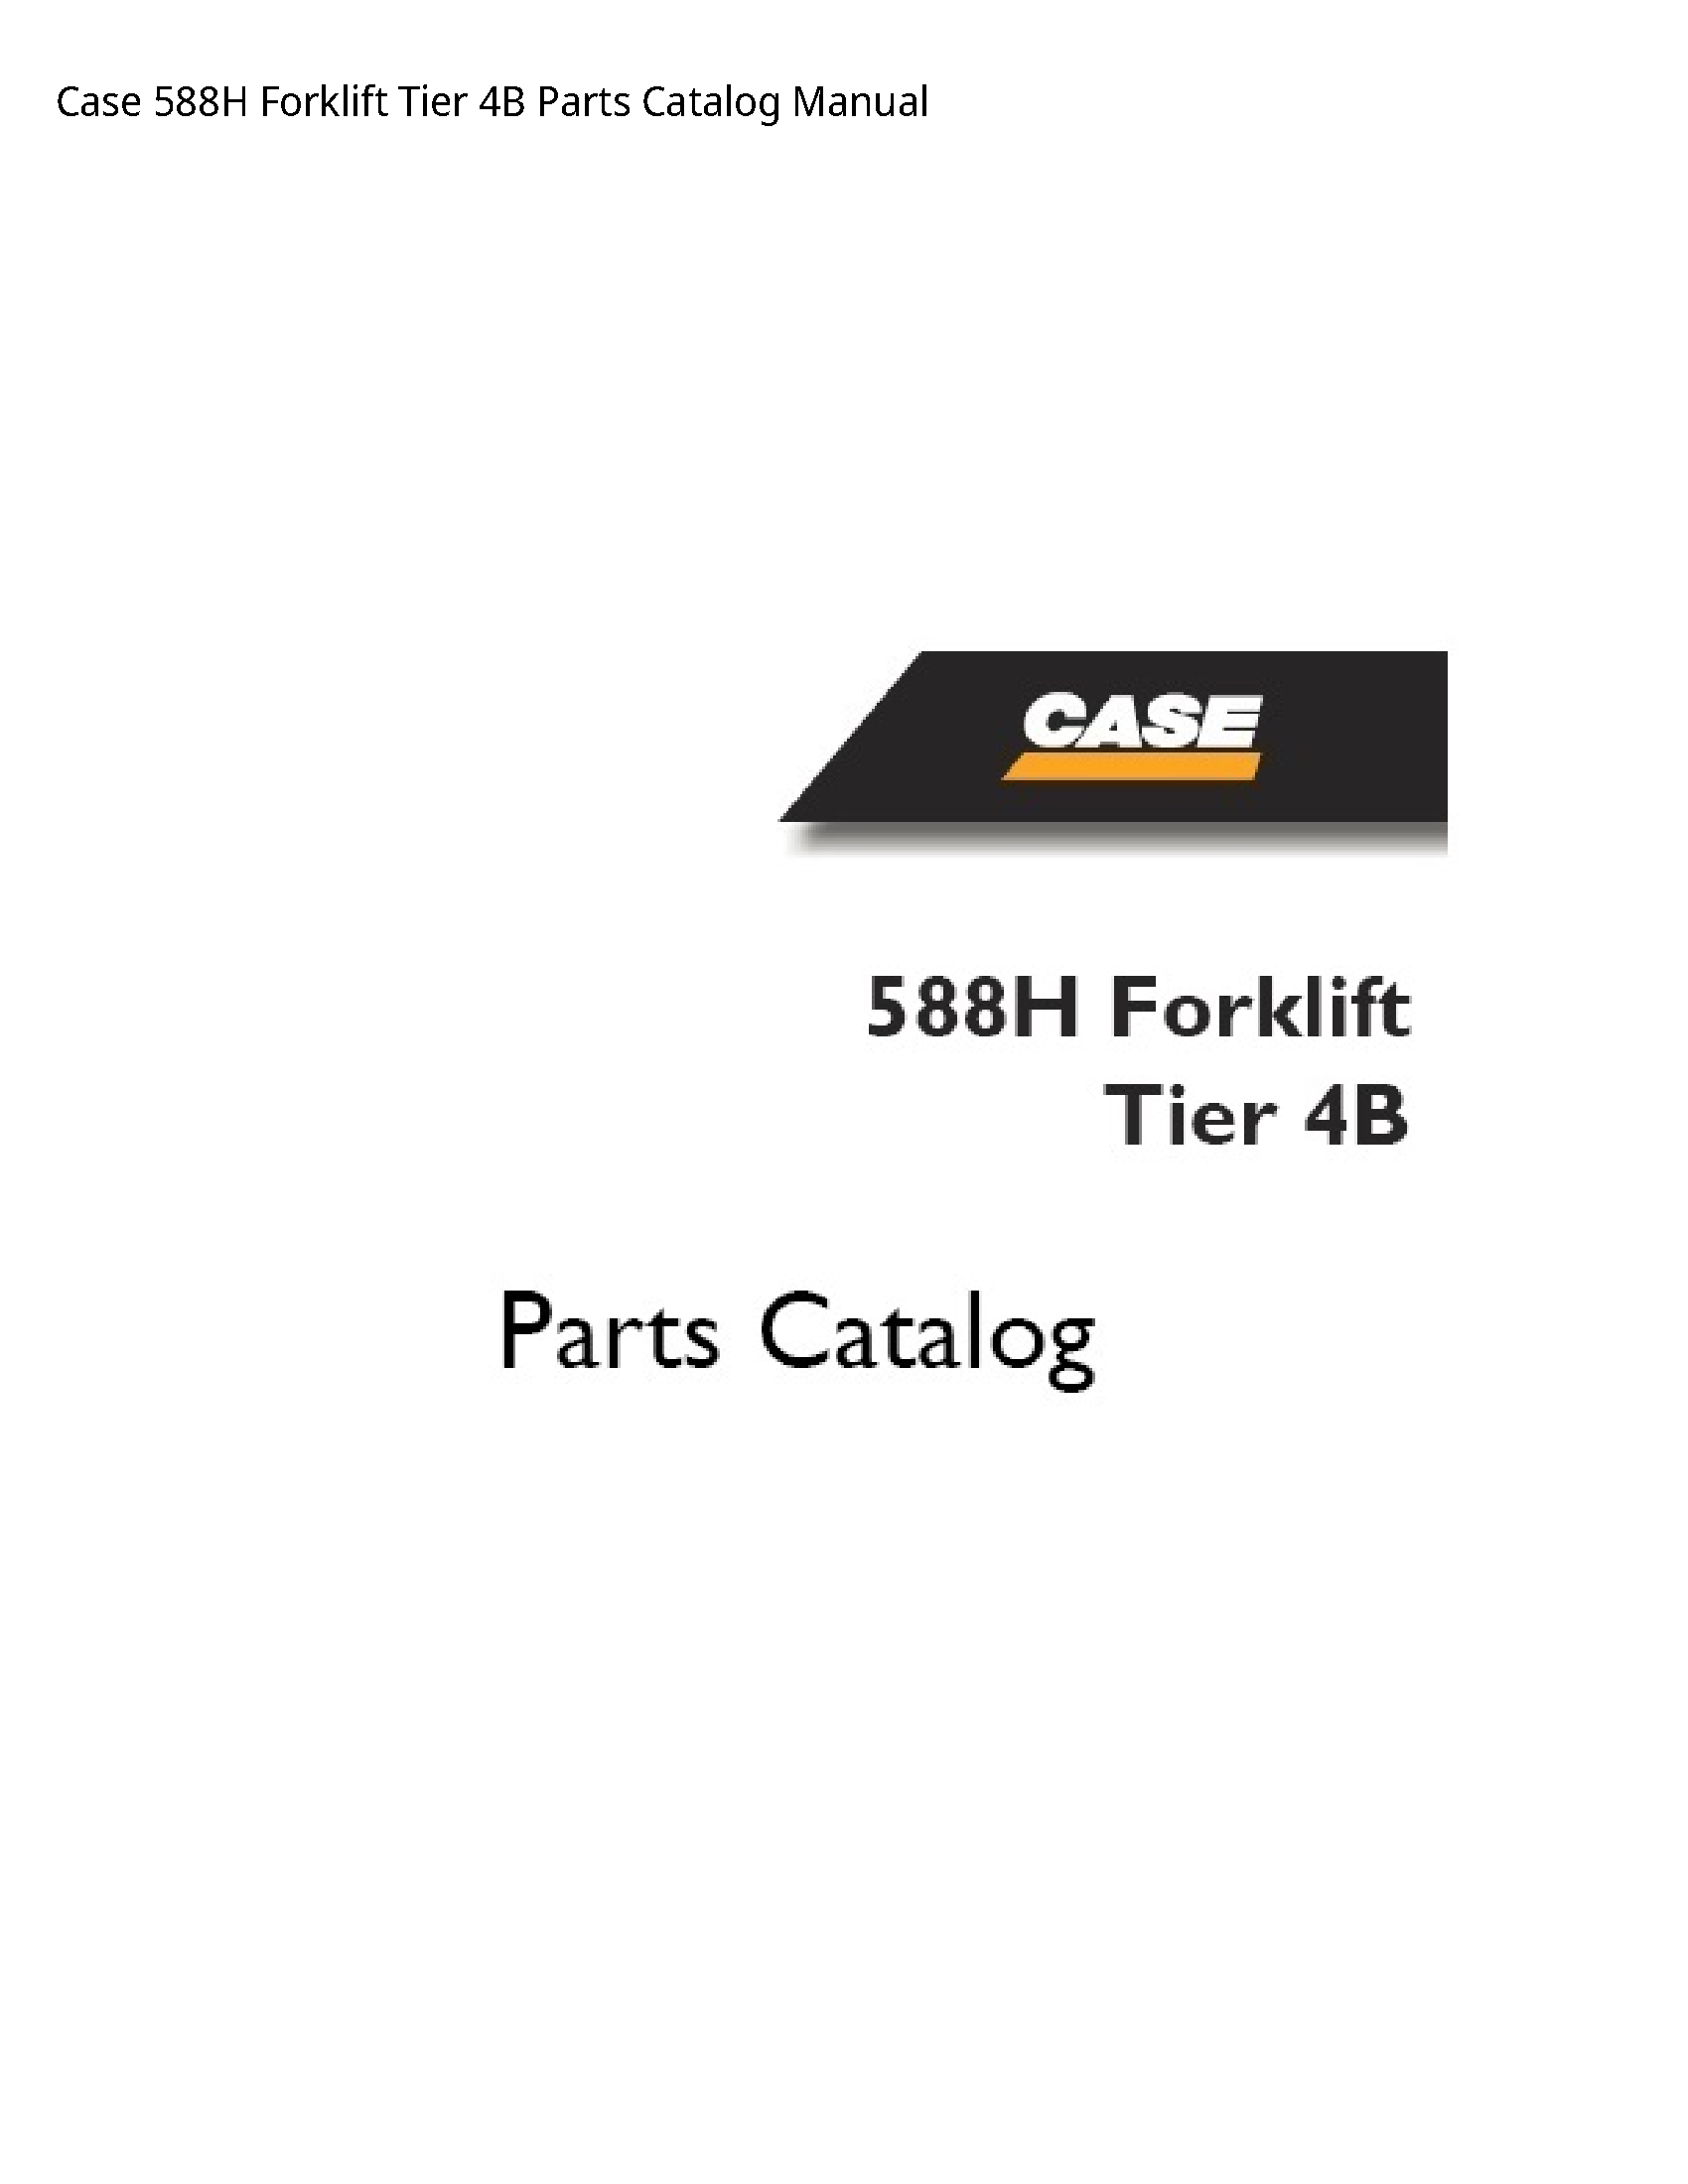 Case/Case IH 588H Forklift Tier Parts Catalog manual